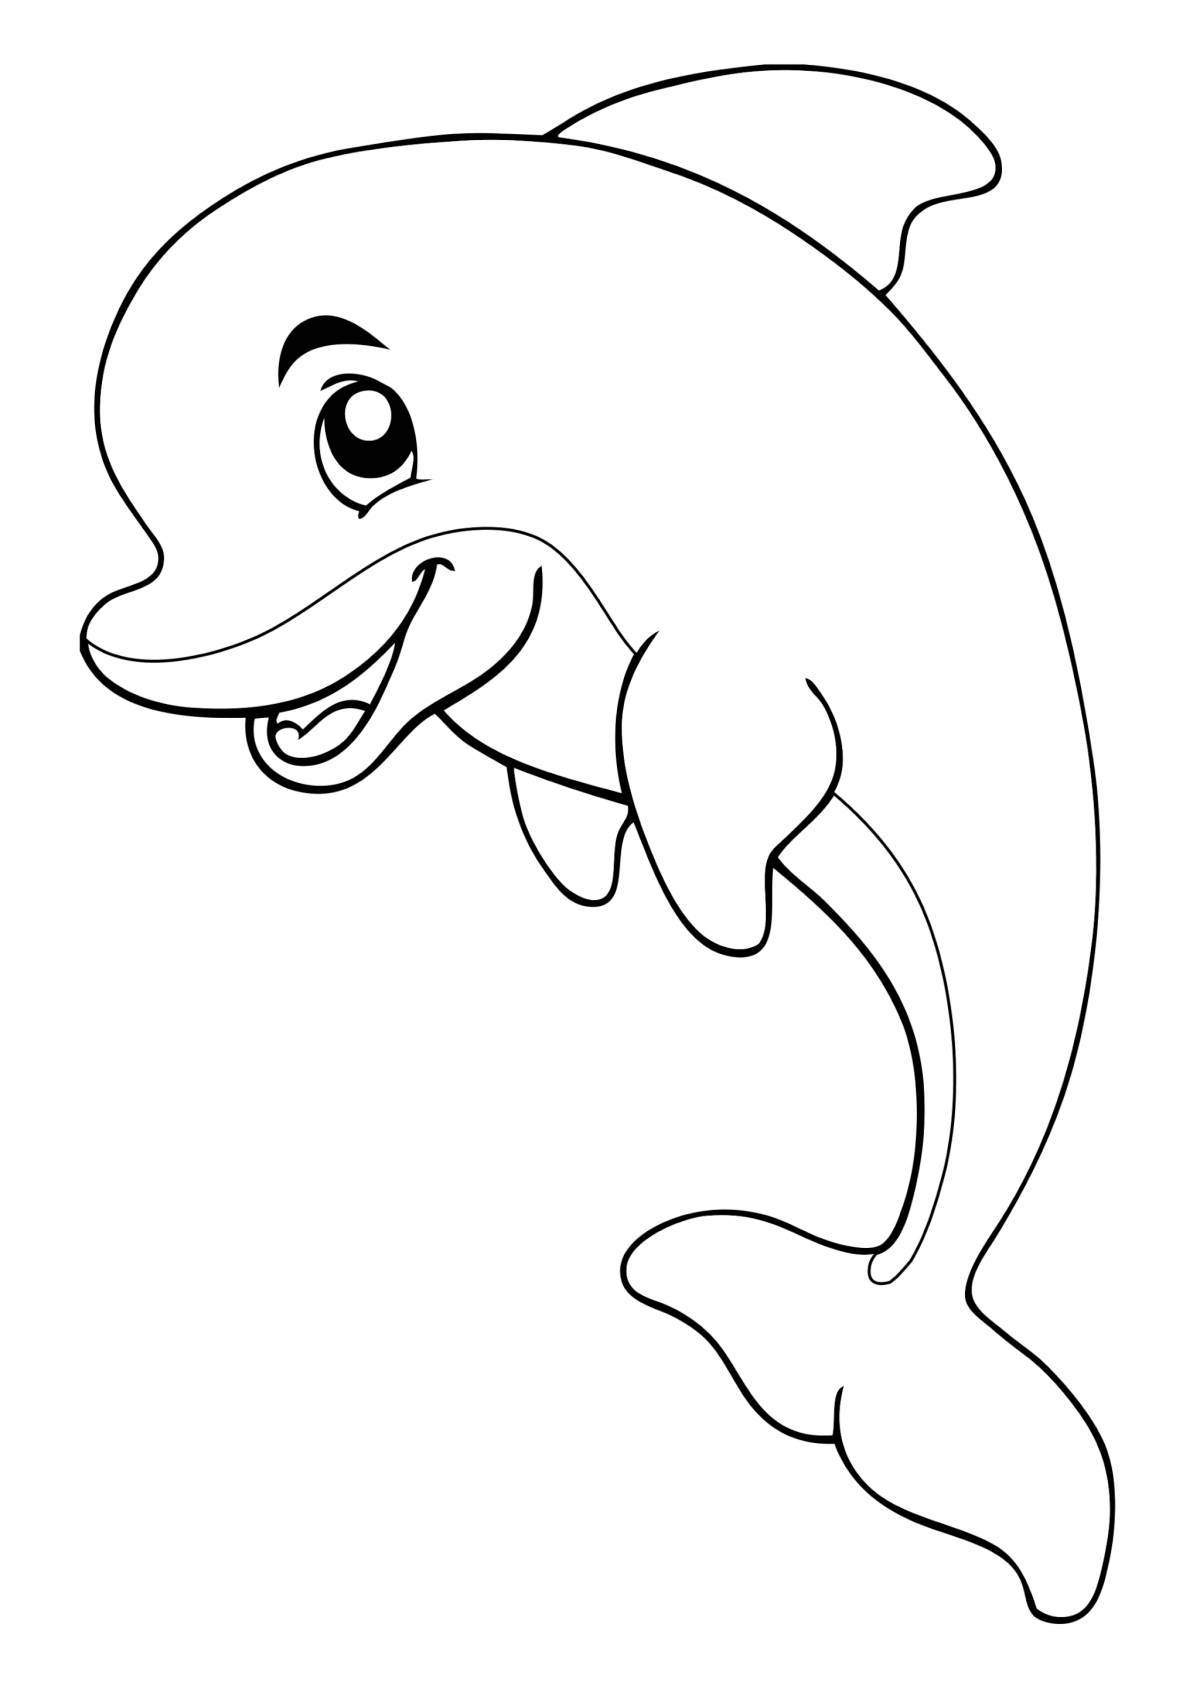 Веселый дельфин раскраски для детей